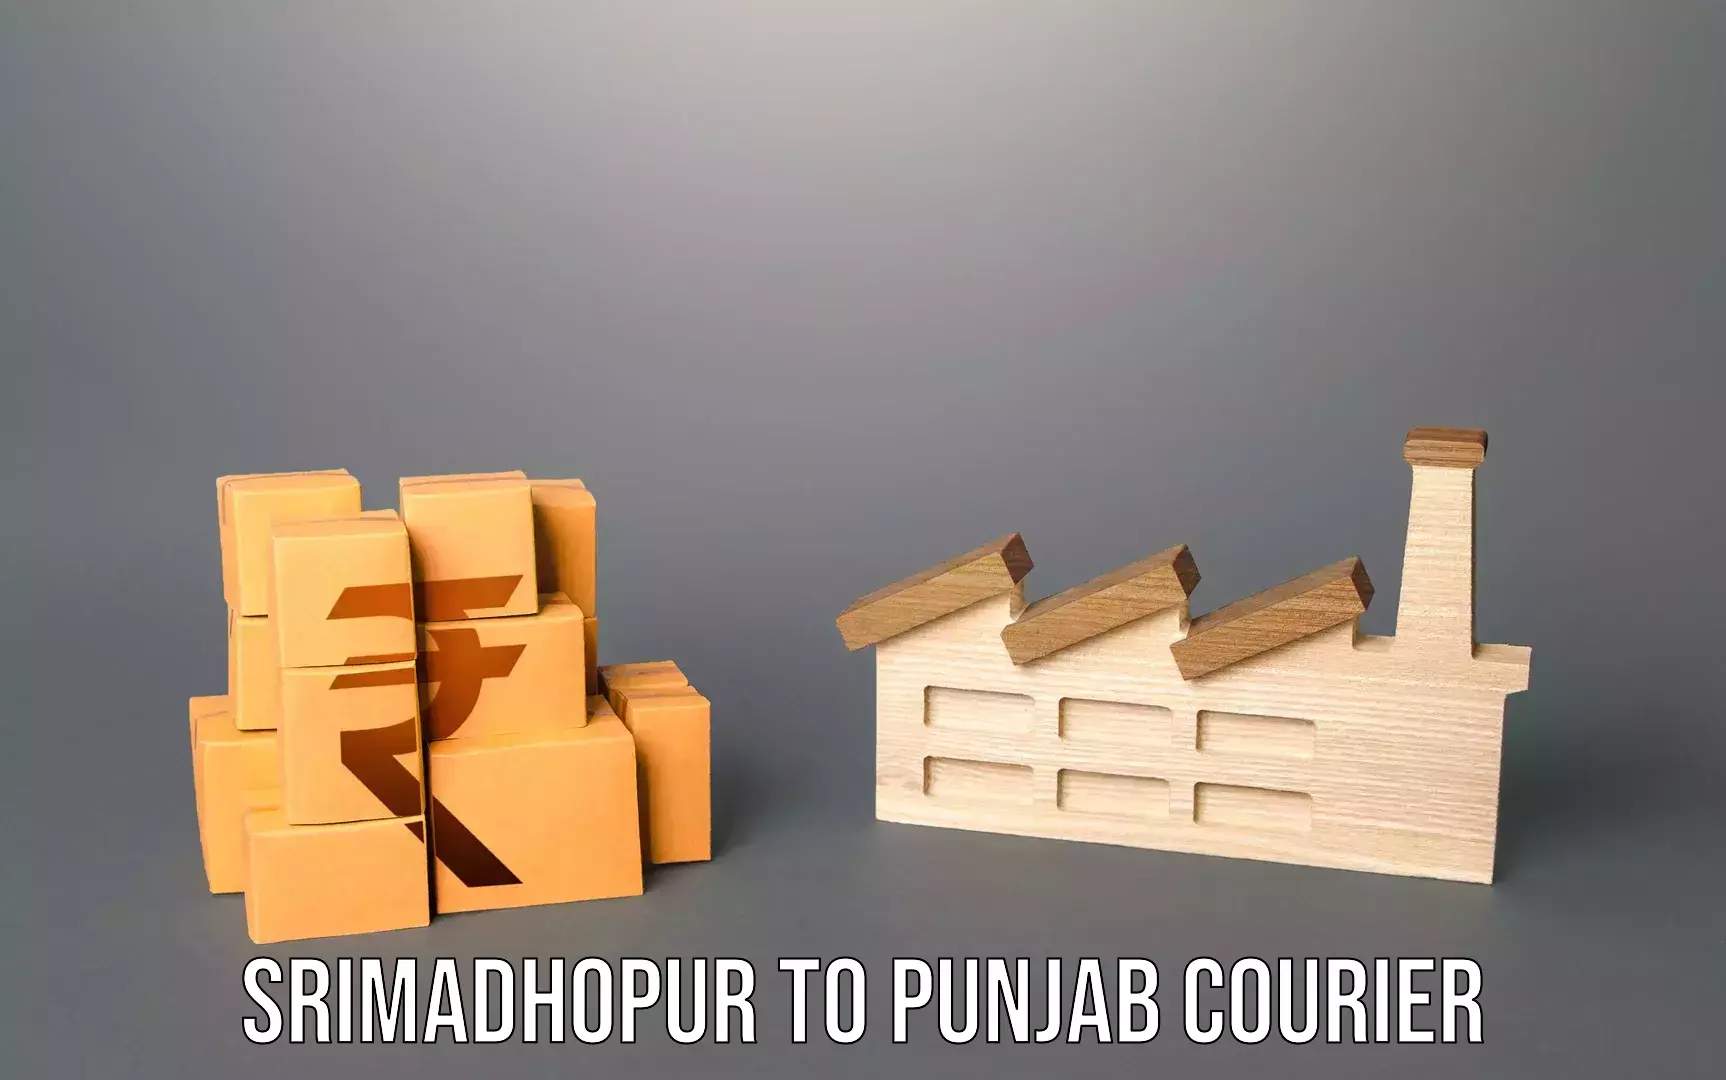 Luggage transport deals Srimadhopur to Central University of Punjab Bathinda